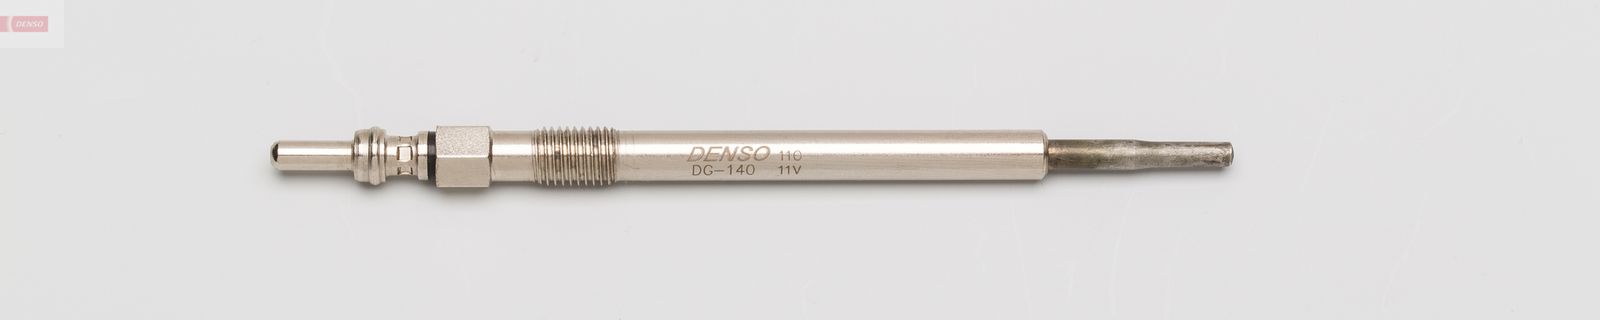 Žhavící svíčka DENSO DG-140